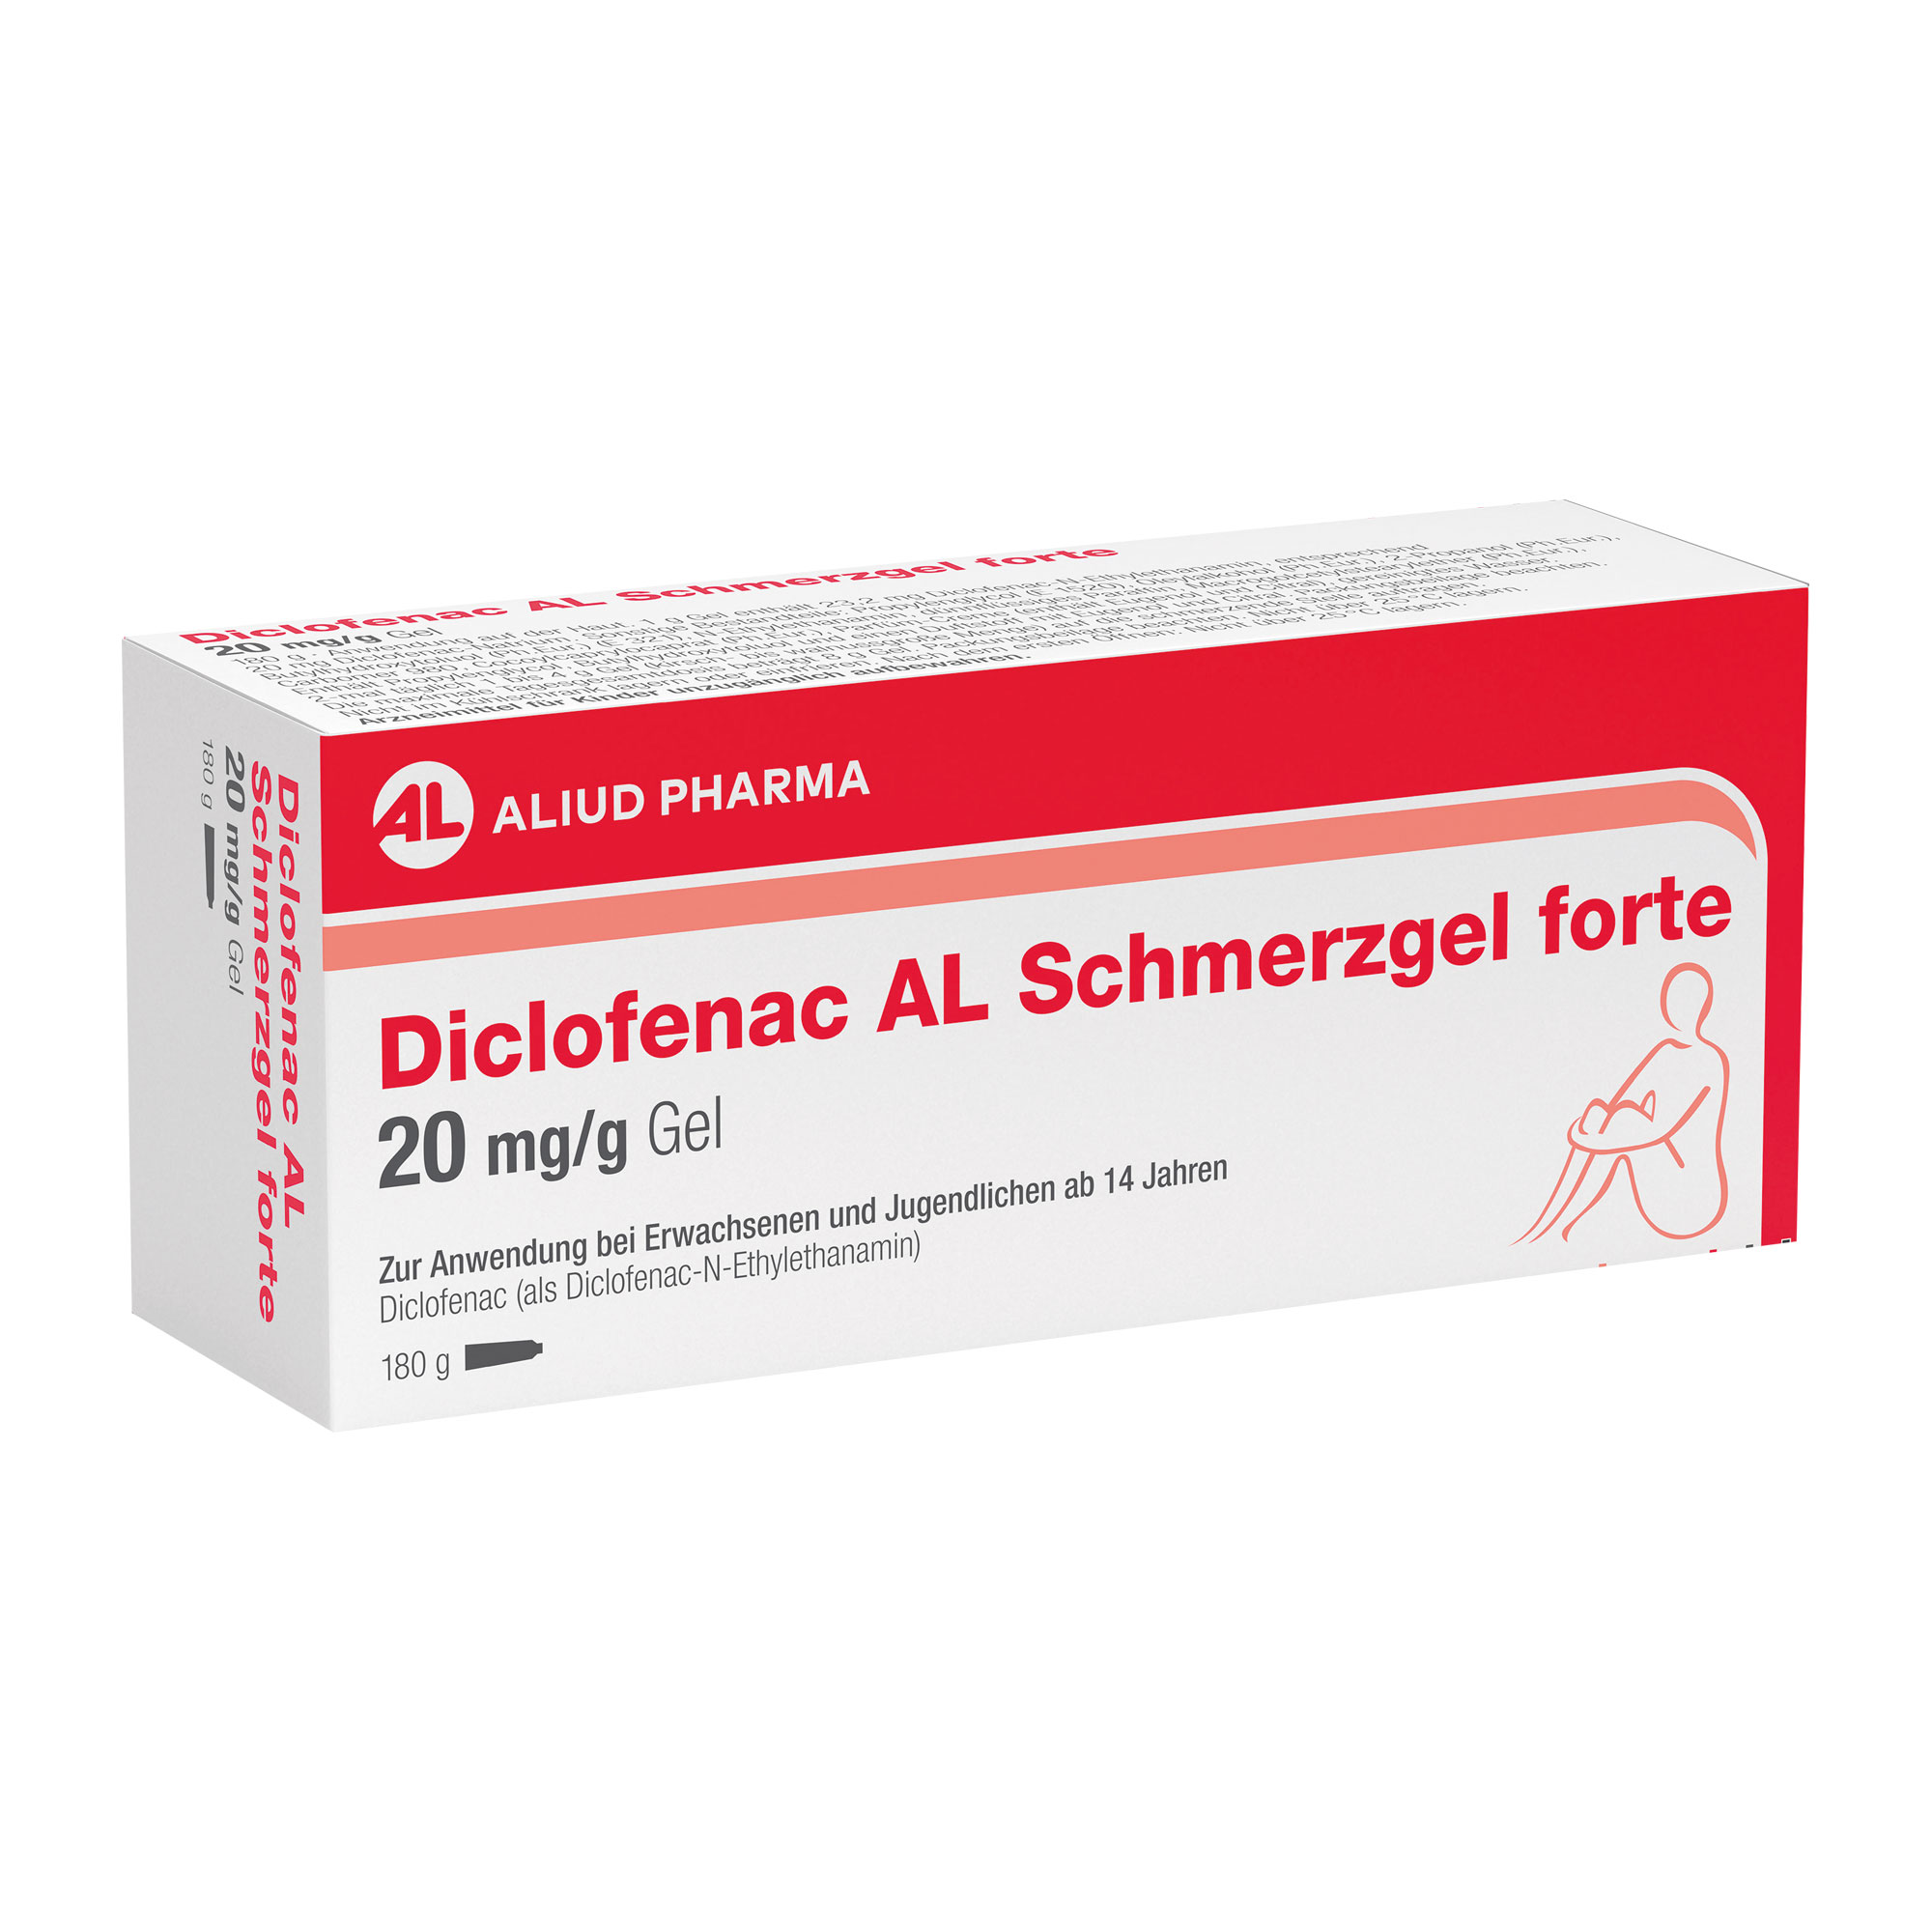 Ein Schmerzgel mit dem Wirkstoff Diclofenac zur äußerlichen Anwendung bei stumpfen Traumata oder Muskel- oder Gelenkschmerzen.